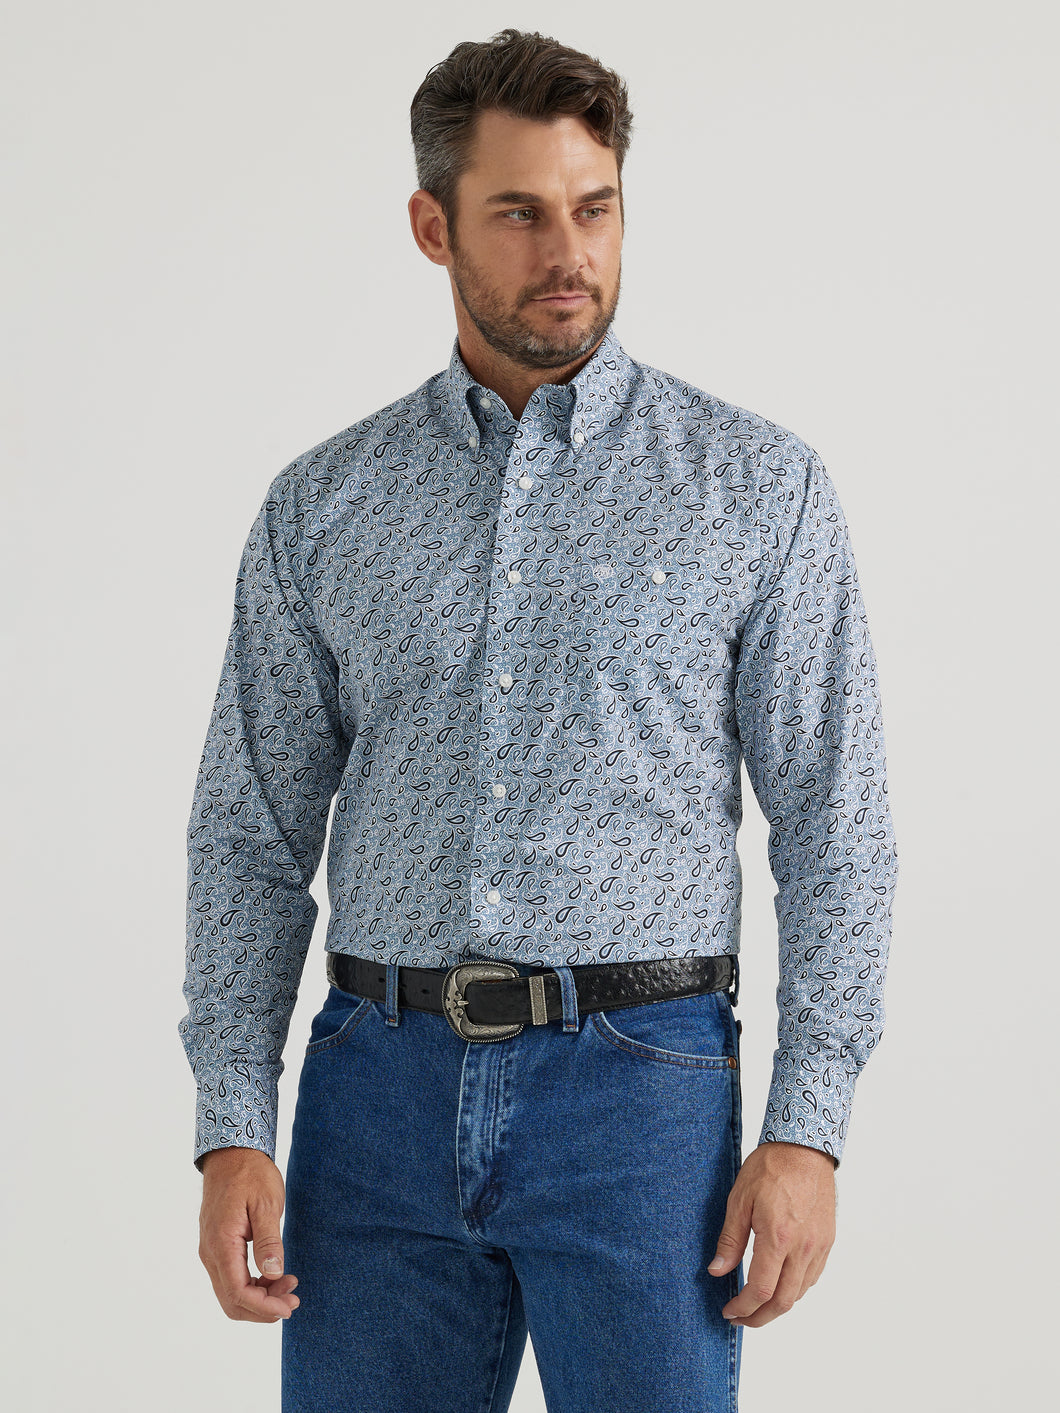 Pard's Western Shop Wrangler Men's Blue/White Paisley Print Classic Button-Down Shirt